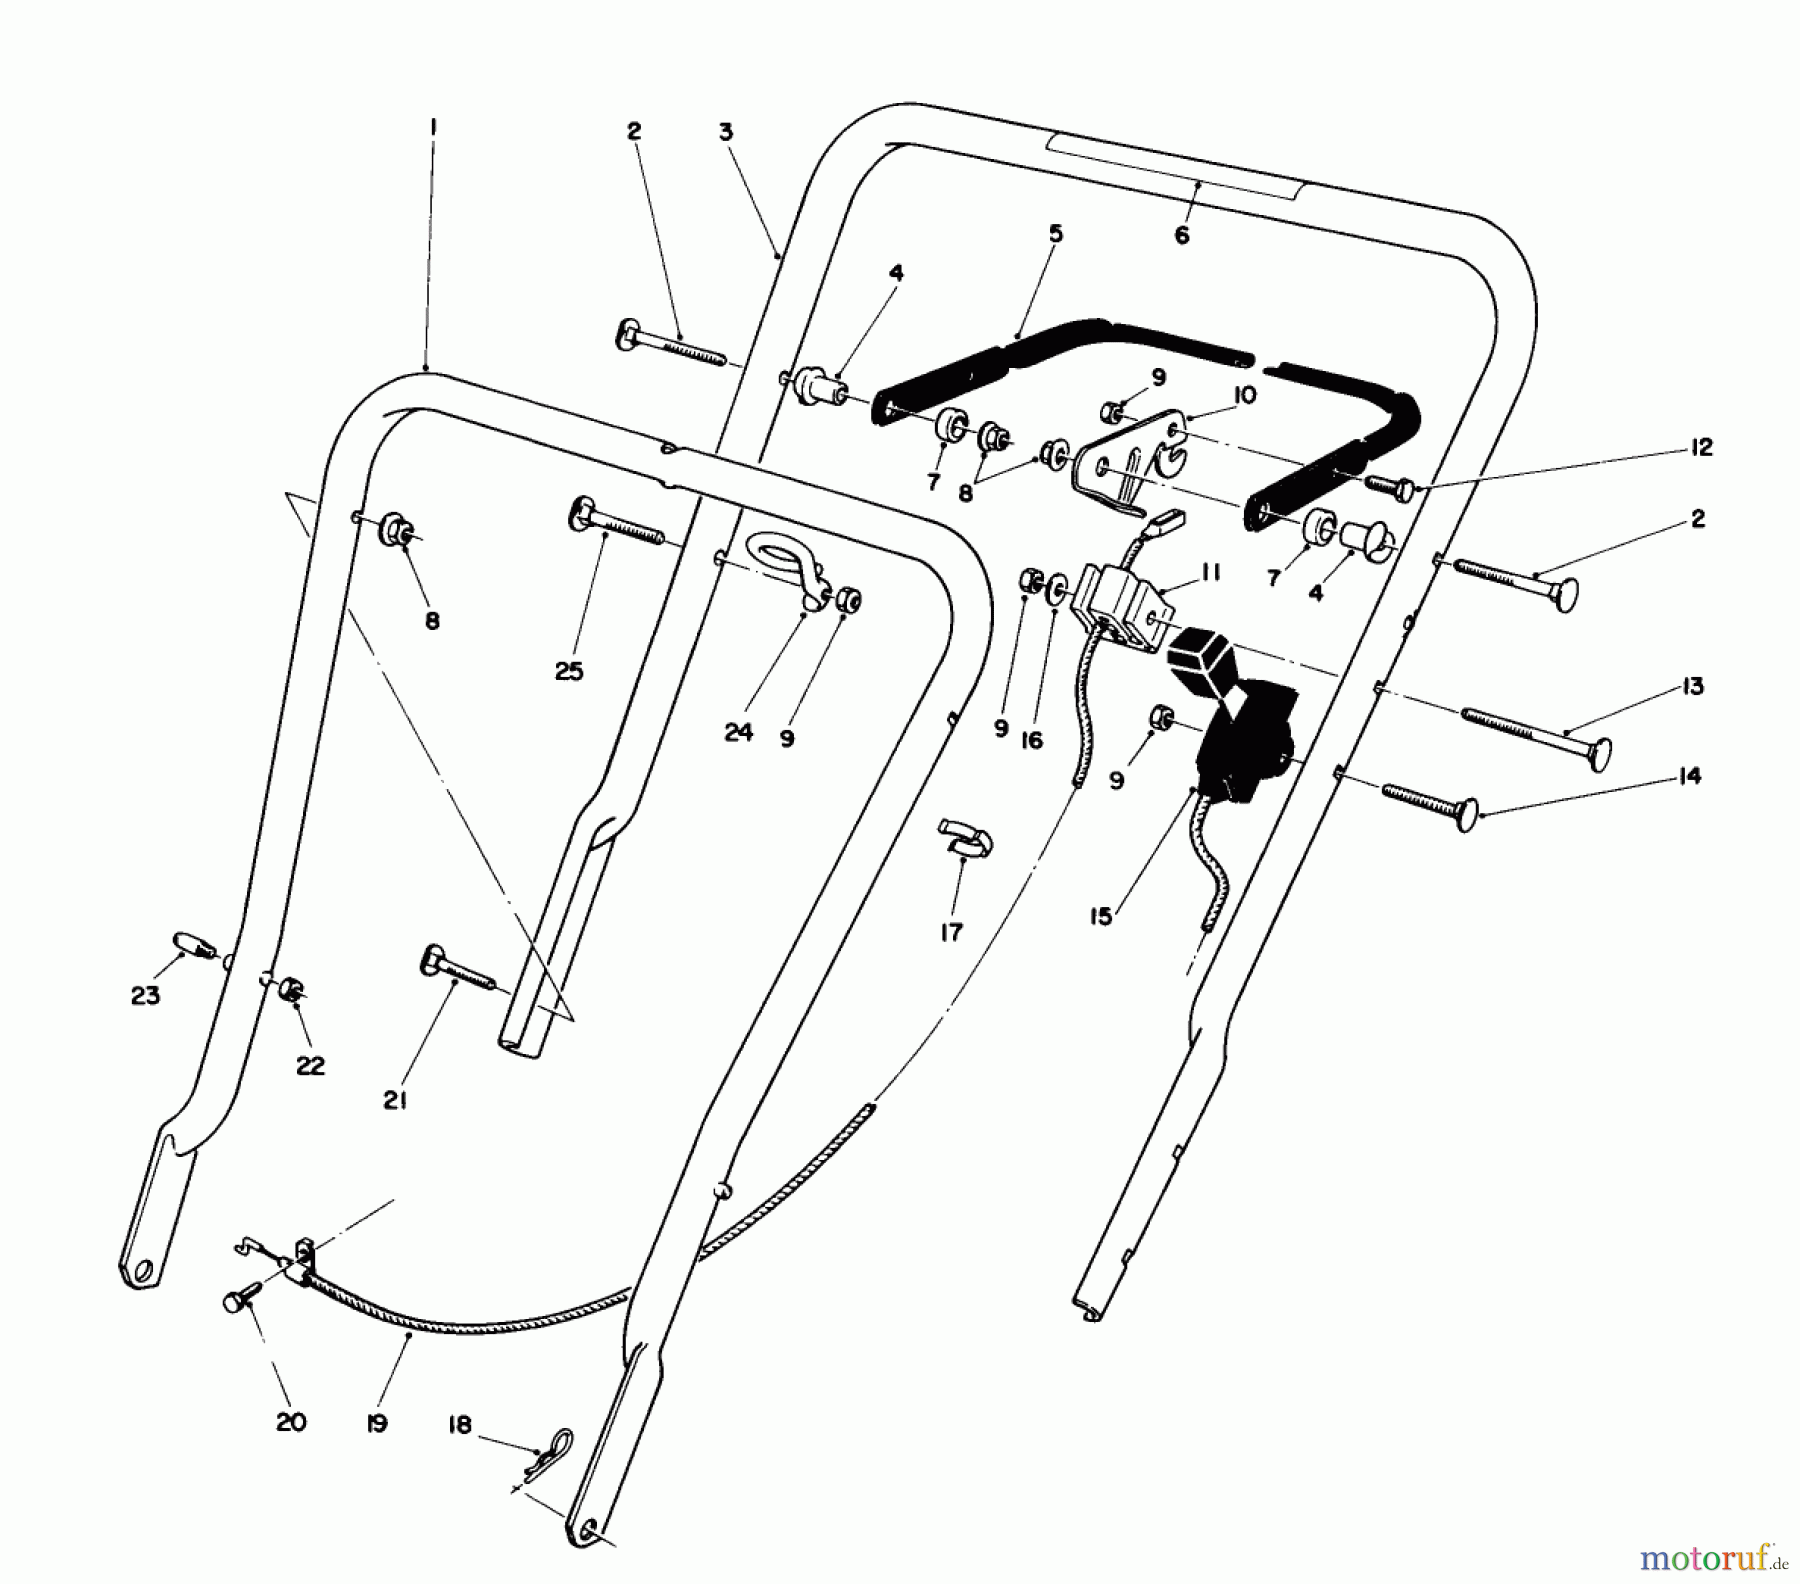  Toro Neu Mowers, Walk-Behind Seite 1 16575 - Toro Lawnmower, 1989 (9000001-9999999) HANDLE ASSEMBLY